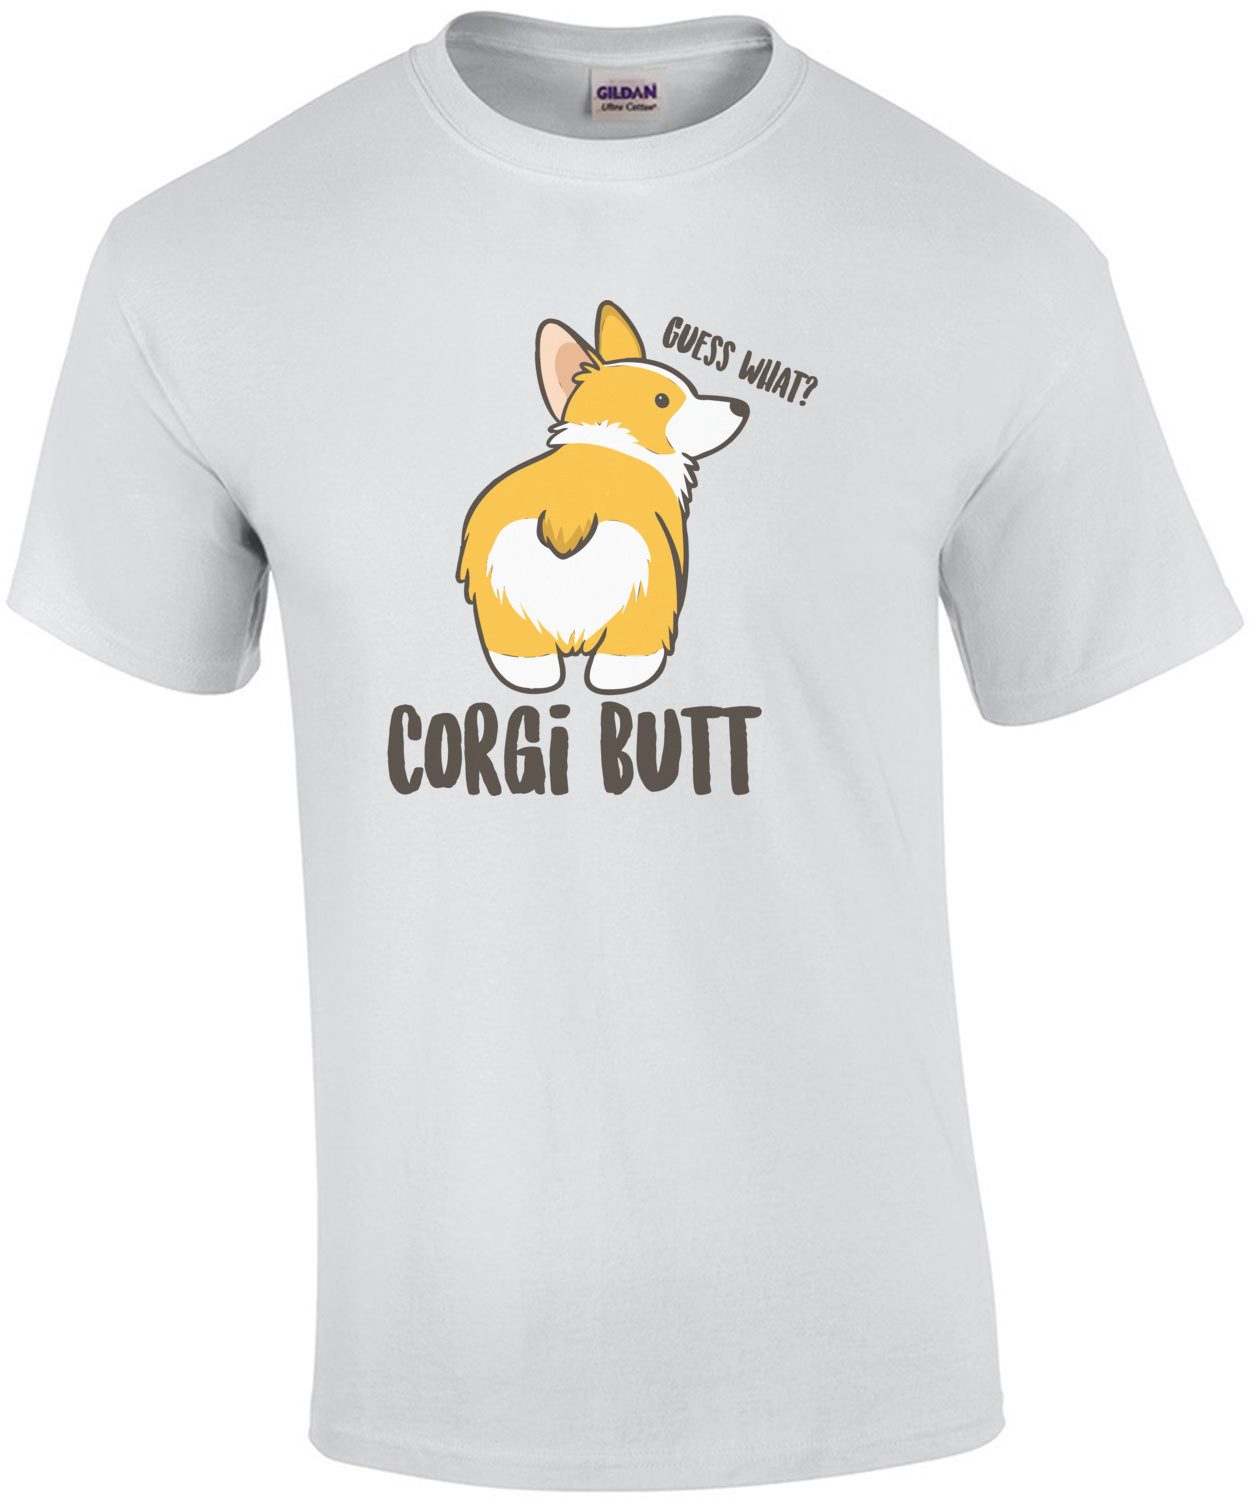 Guess what? Corgi Butt - Corgi / Pembroke Welsh Corgi T-Shirt